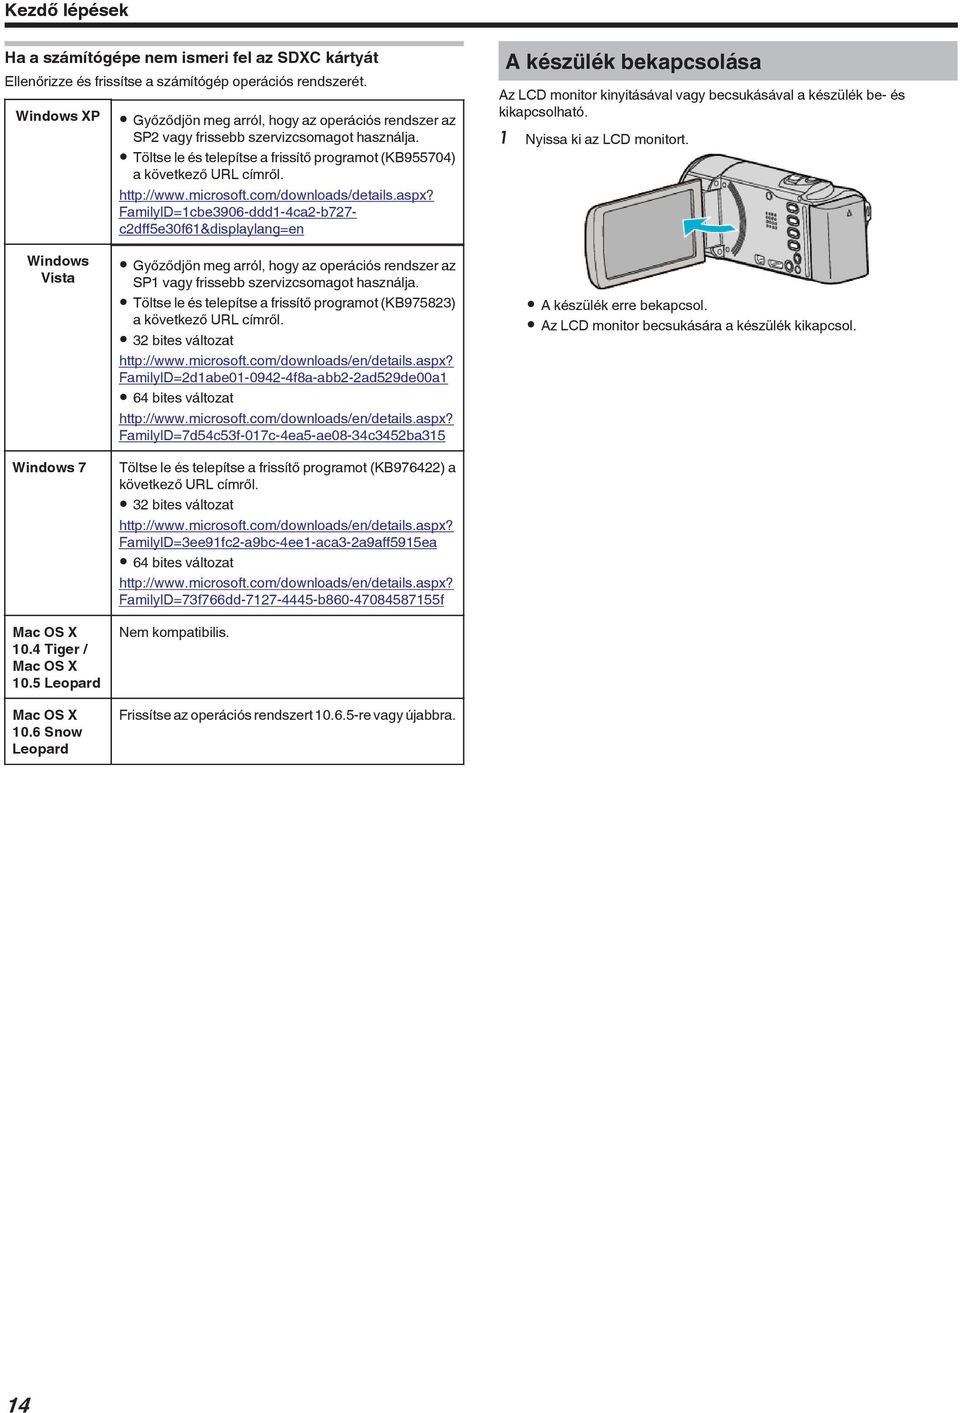 FamilyID=1cbe3906-ddd1-4ca2-b727- c2dff5e30f61&displaylang=en A készülék bekapcsolása Az LCD monitor kinyitásával vagy becsukásával a készülék be- és kikapcsolható 1 Nyissa ki az LCD monitort Windows